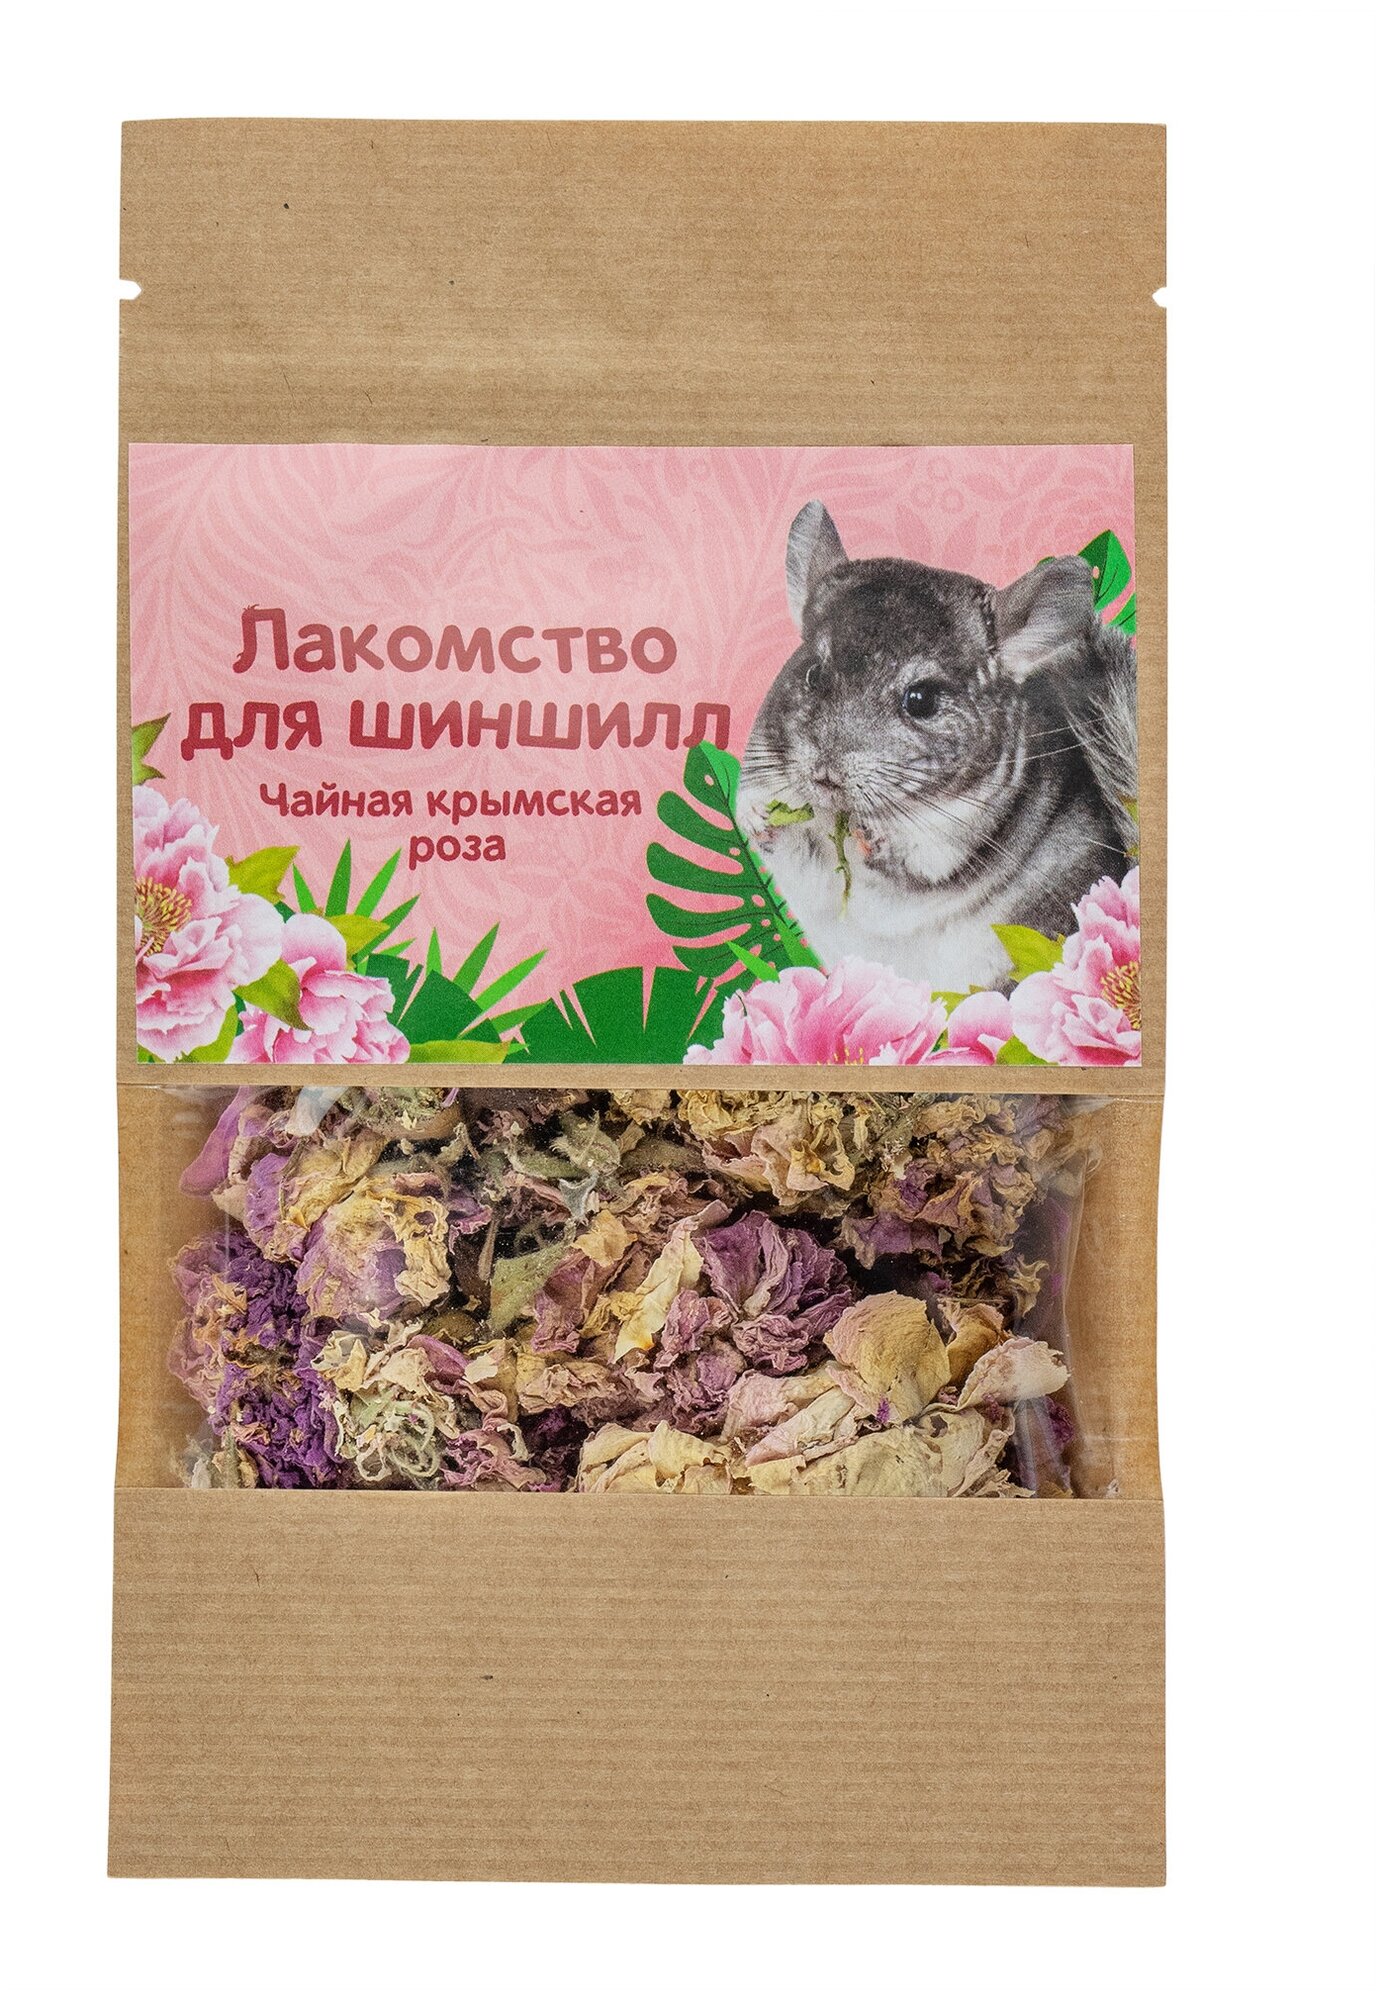 Крымская роза для грызунов корм, лакомство для шиншилл, 30 гр